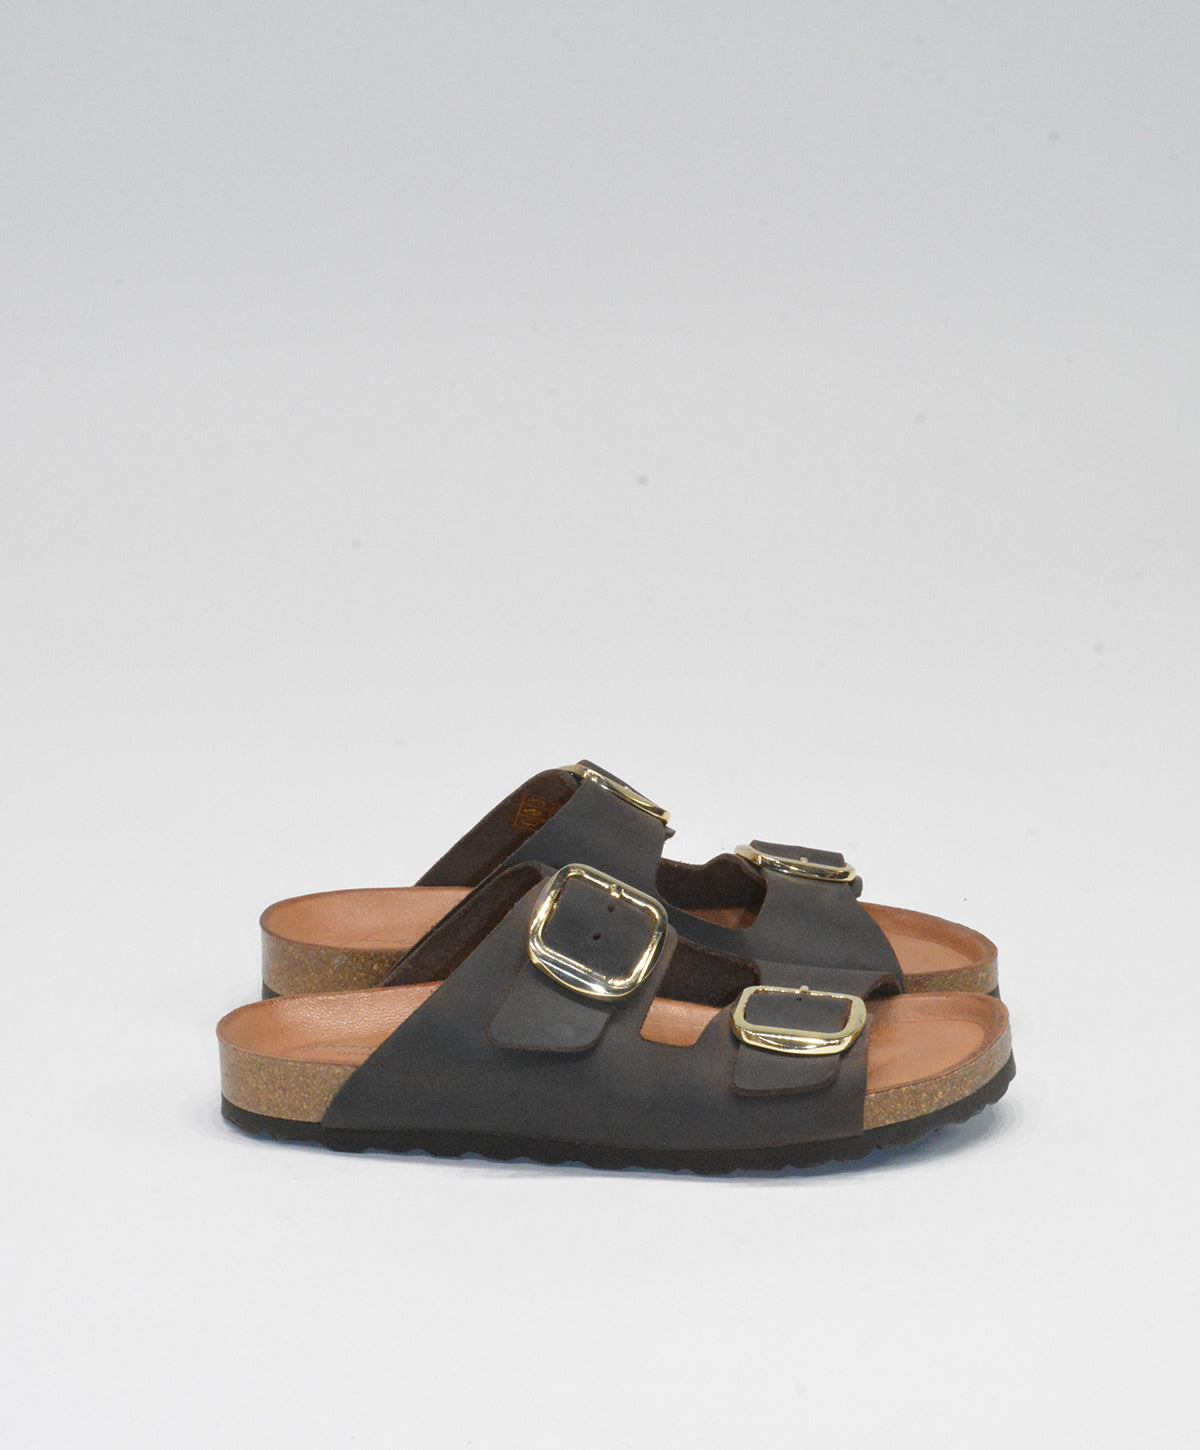 Shoedesign Copenhagen sandal- TOPIC - Brown